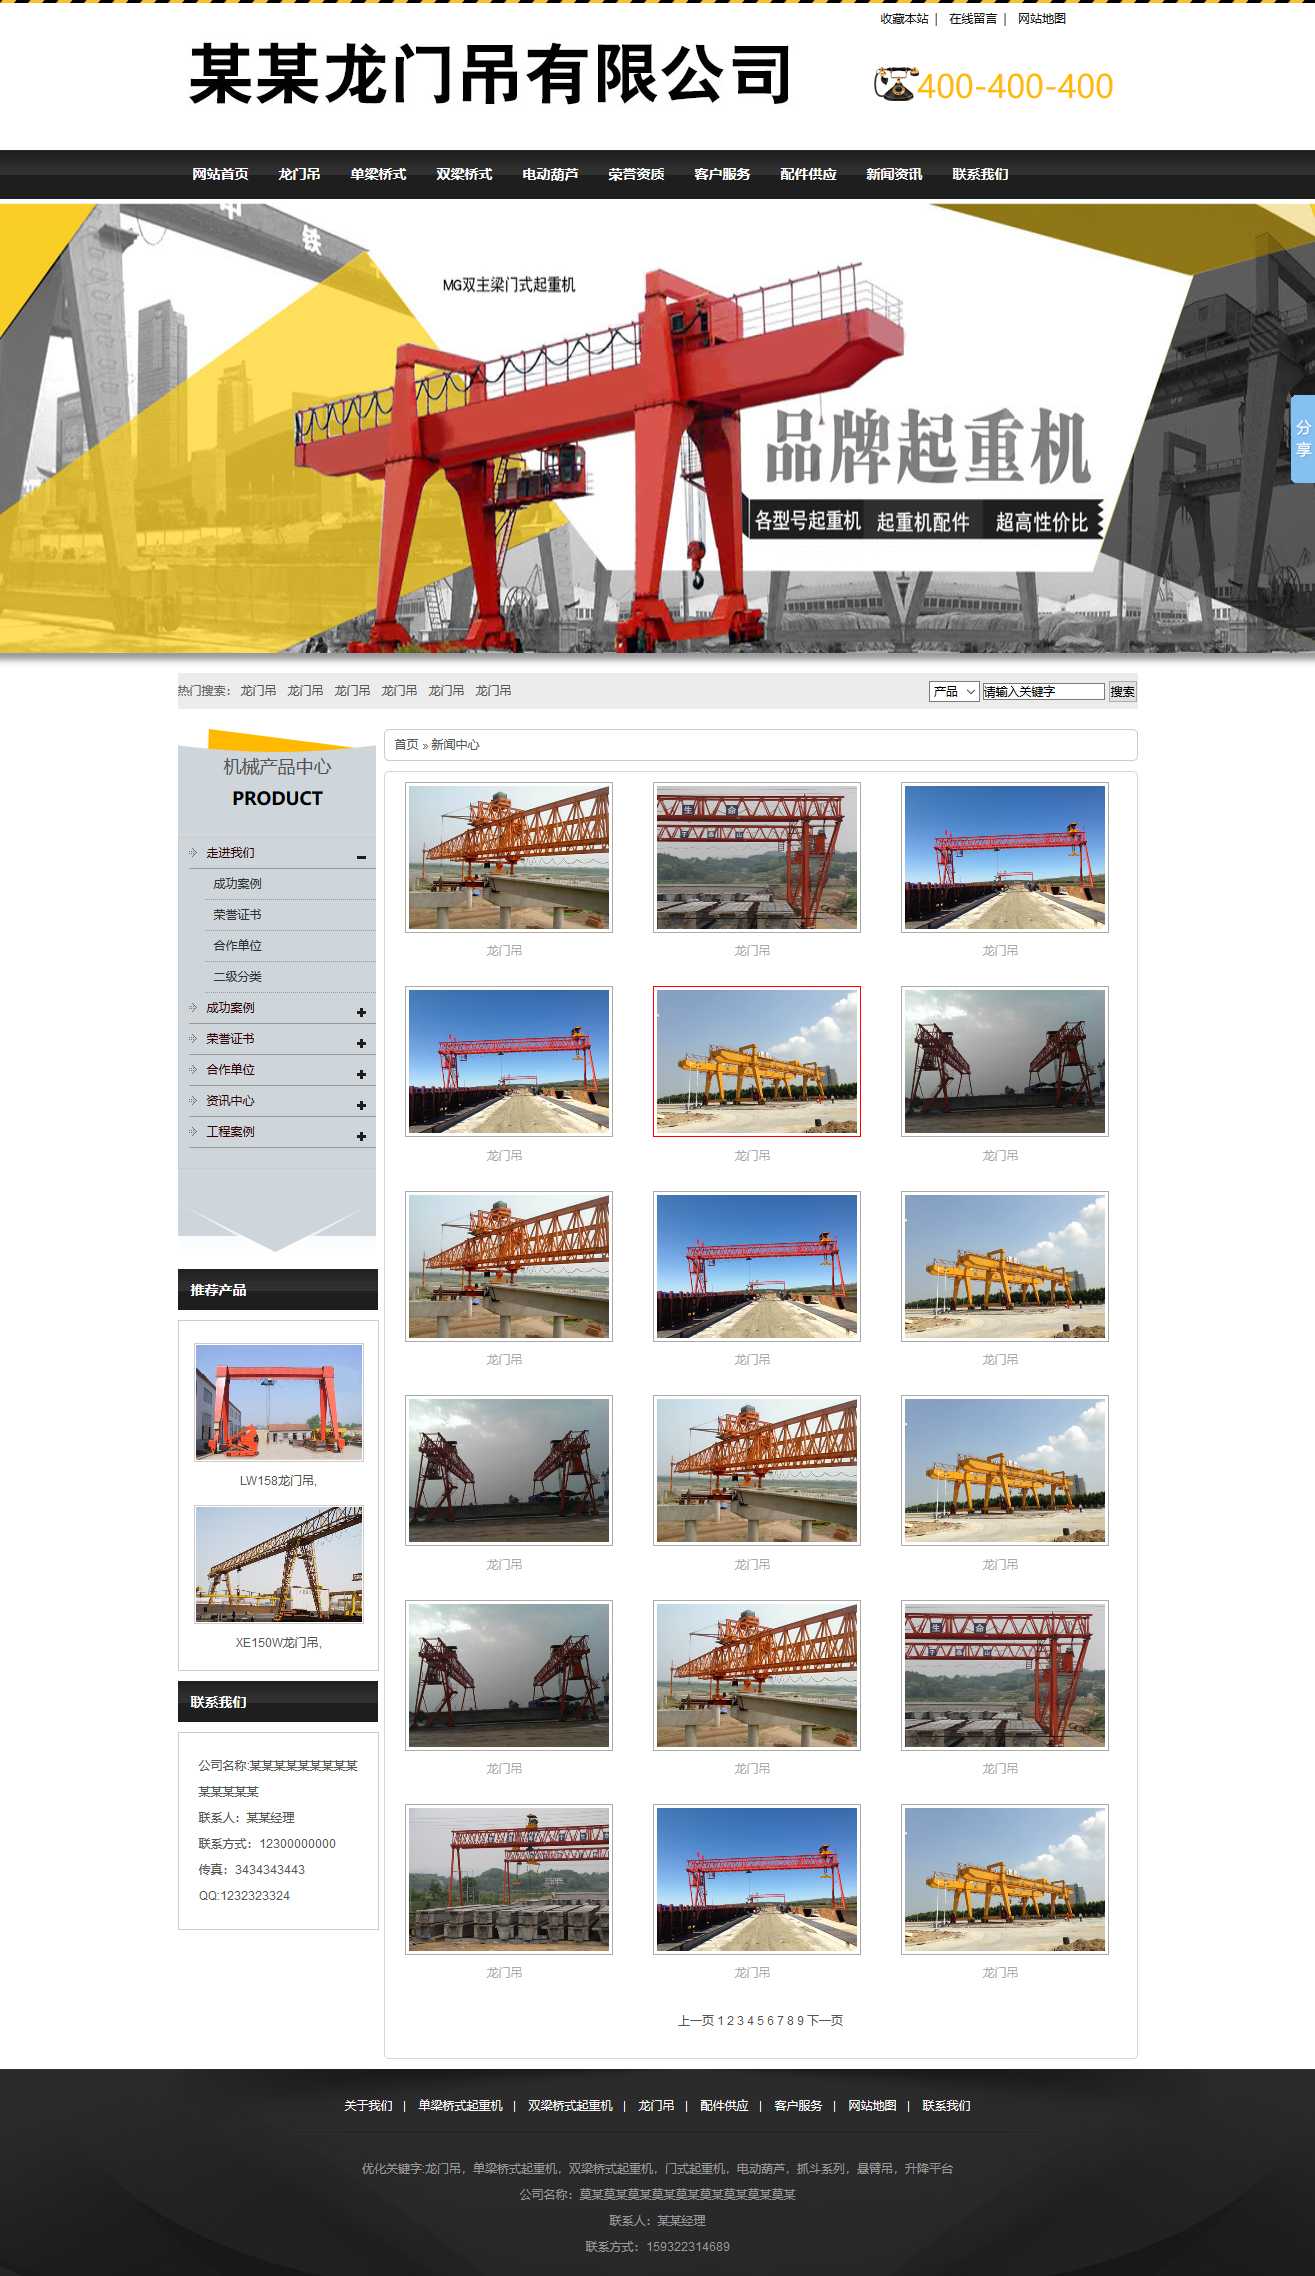 起重机,电动葫芦,悬臂吊,升降平台网站图片列表效果图